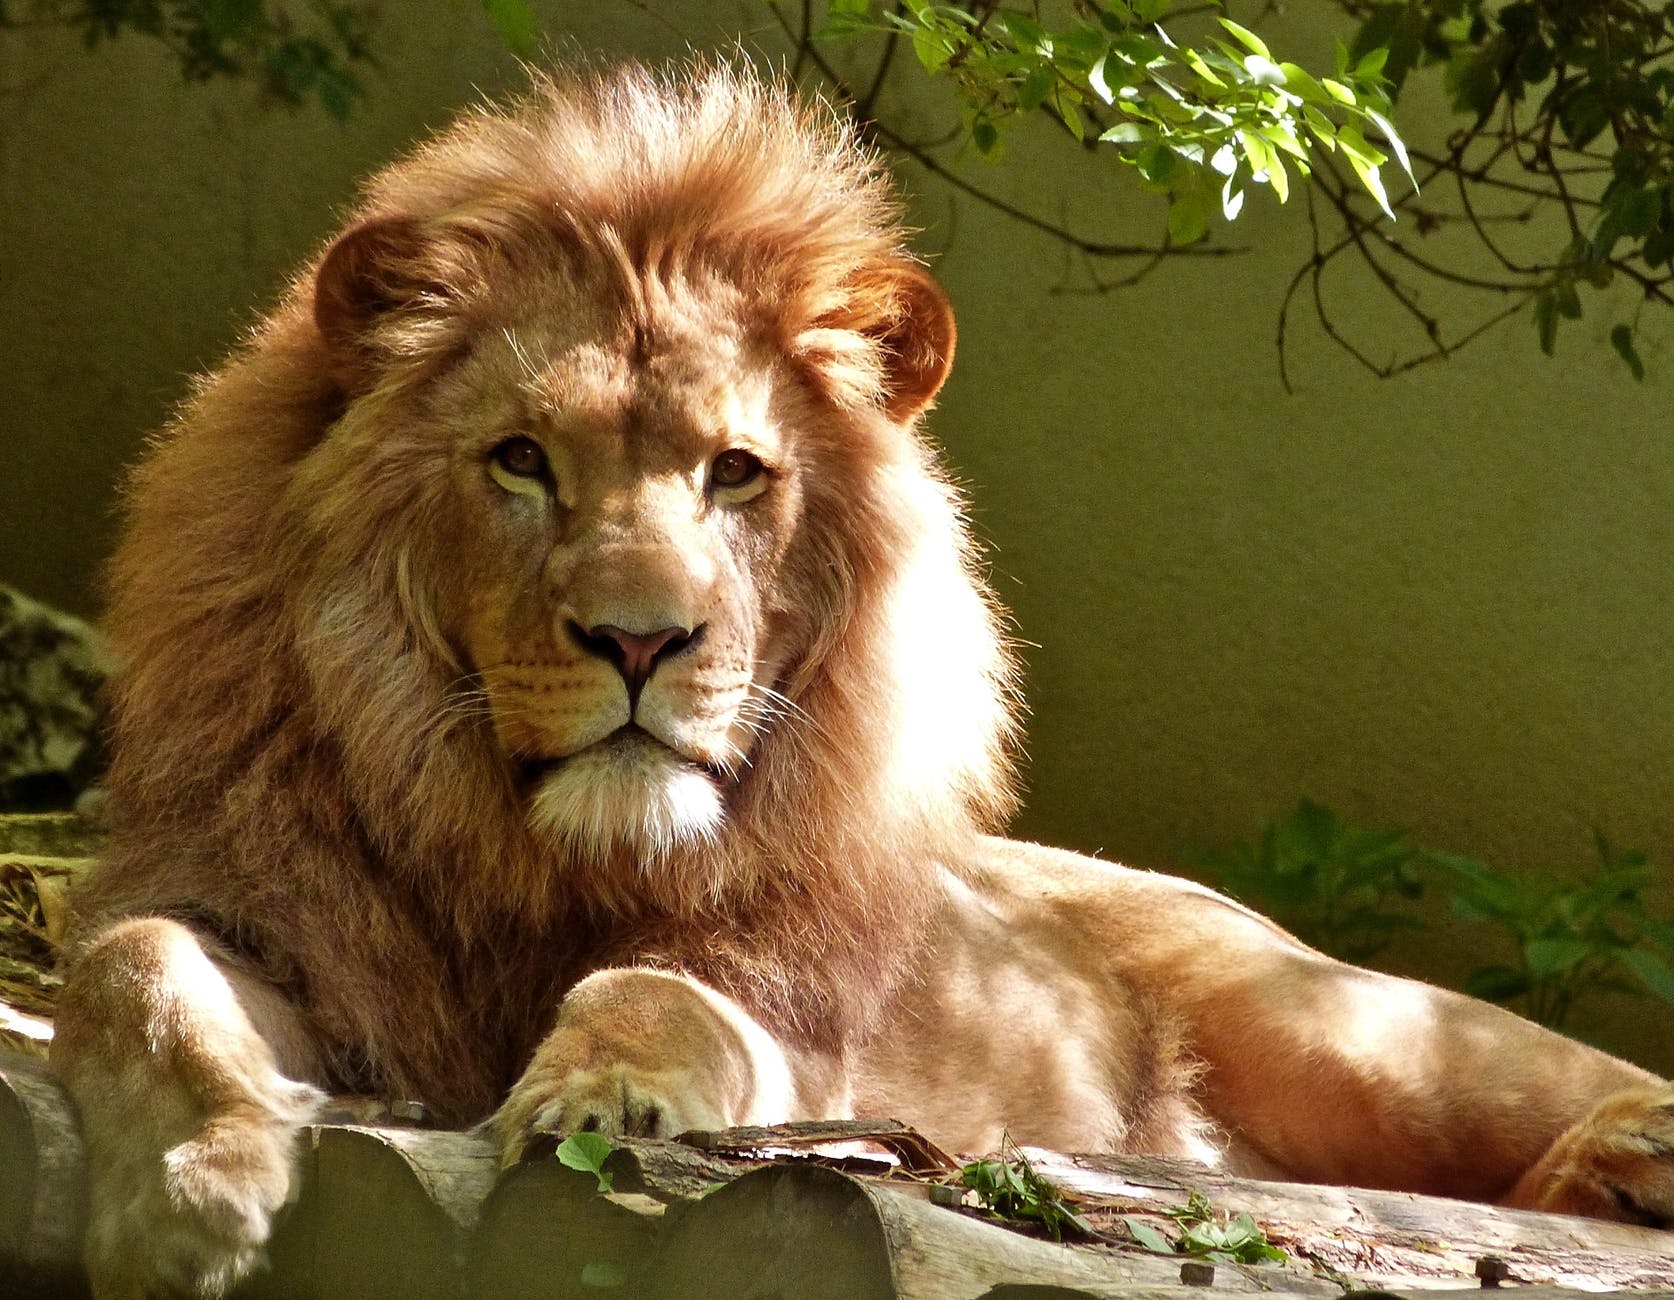 close up portrait of lion